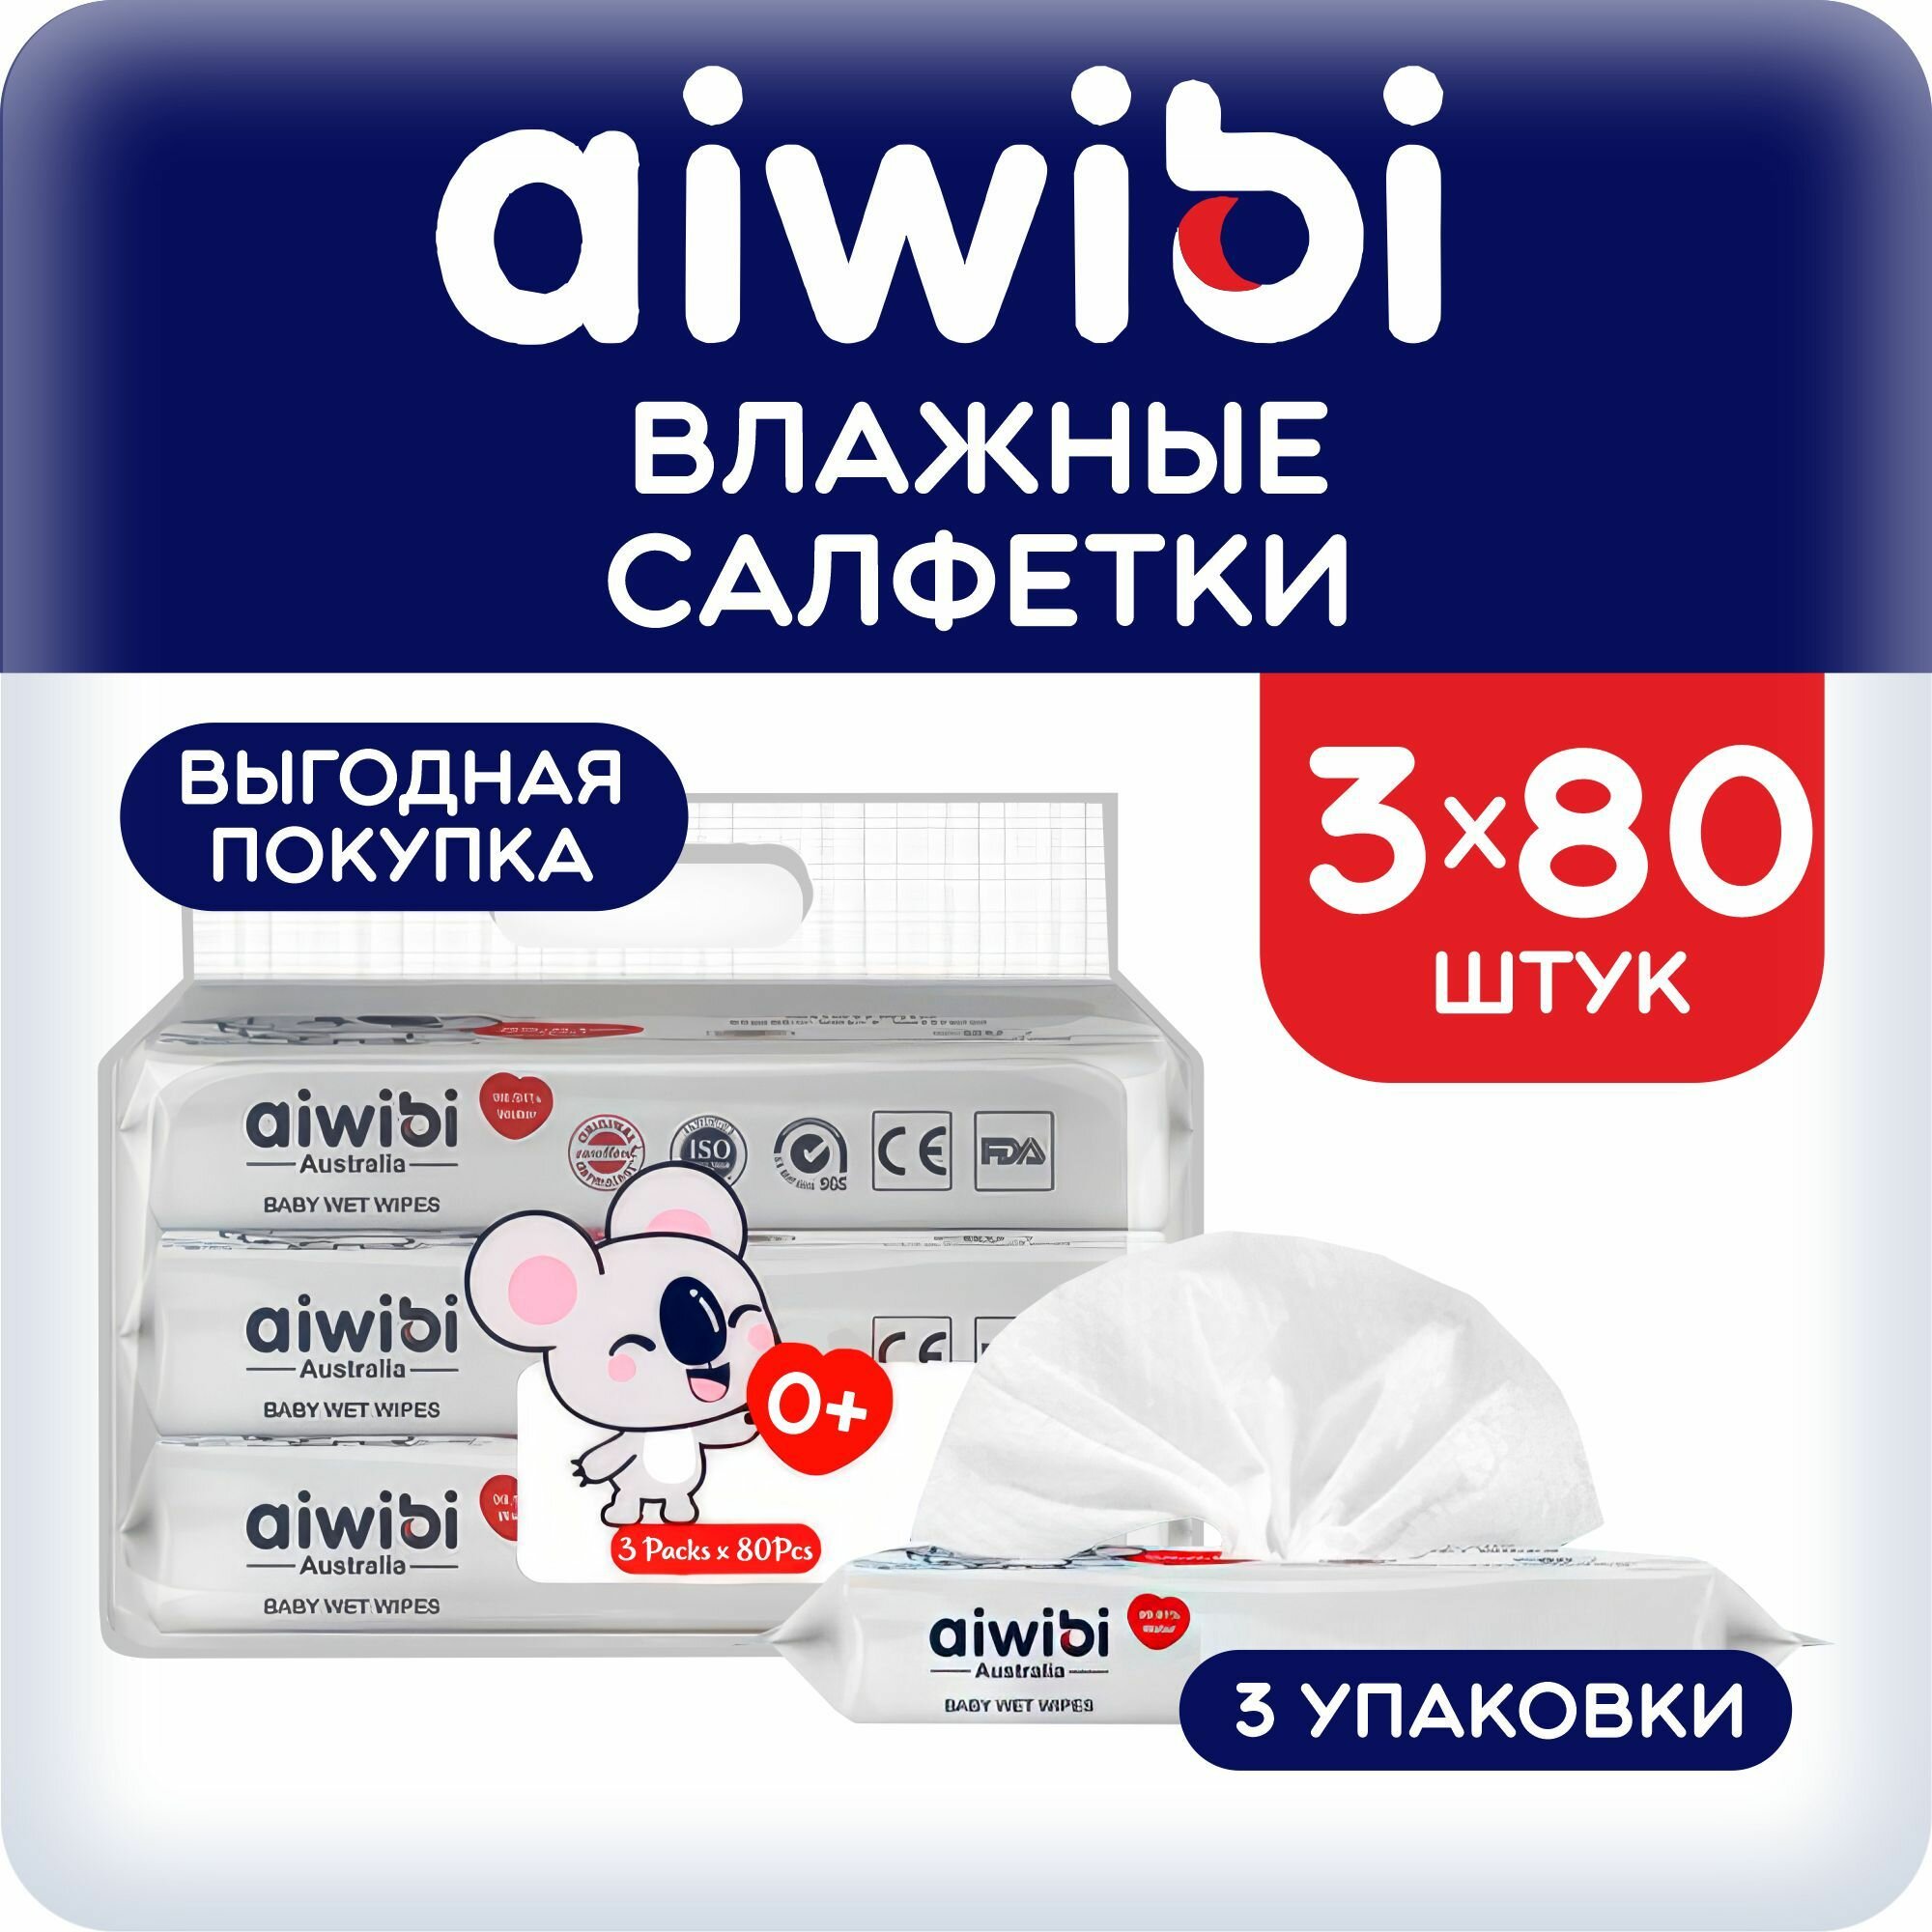 Детские влажные салфетки AIWIBI премиум-класса 3 упаковки по 80 шт.